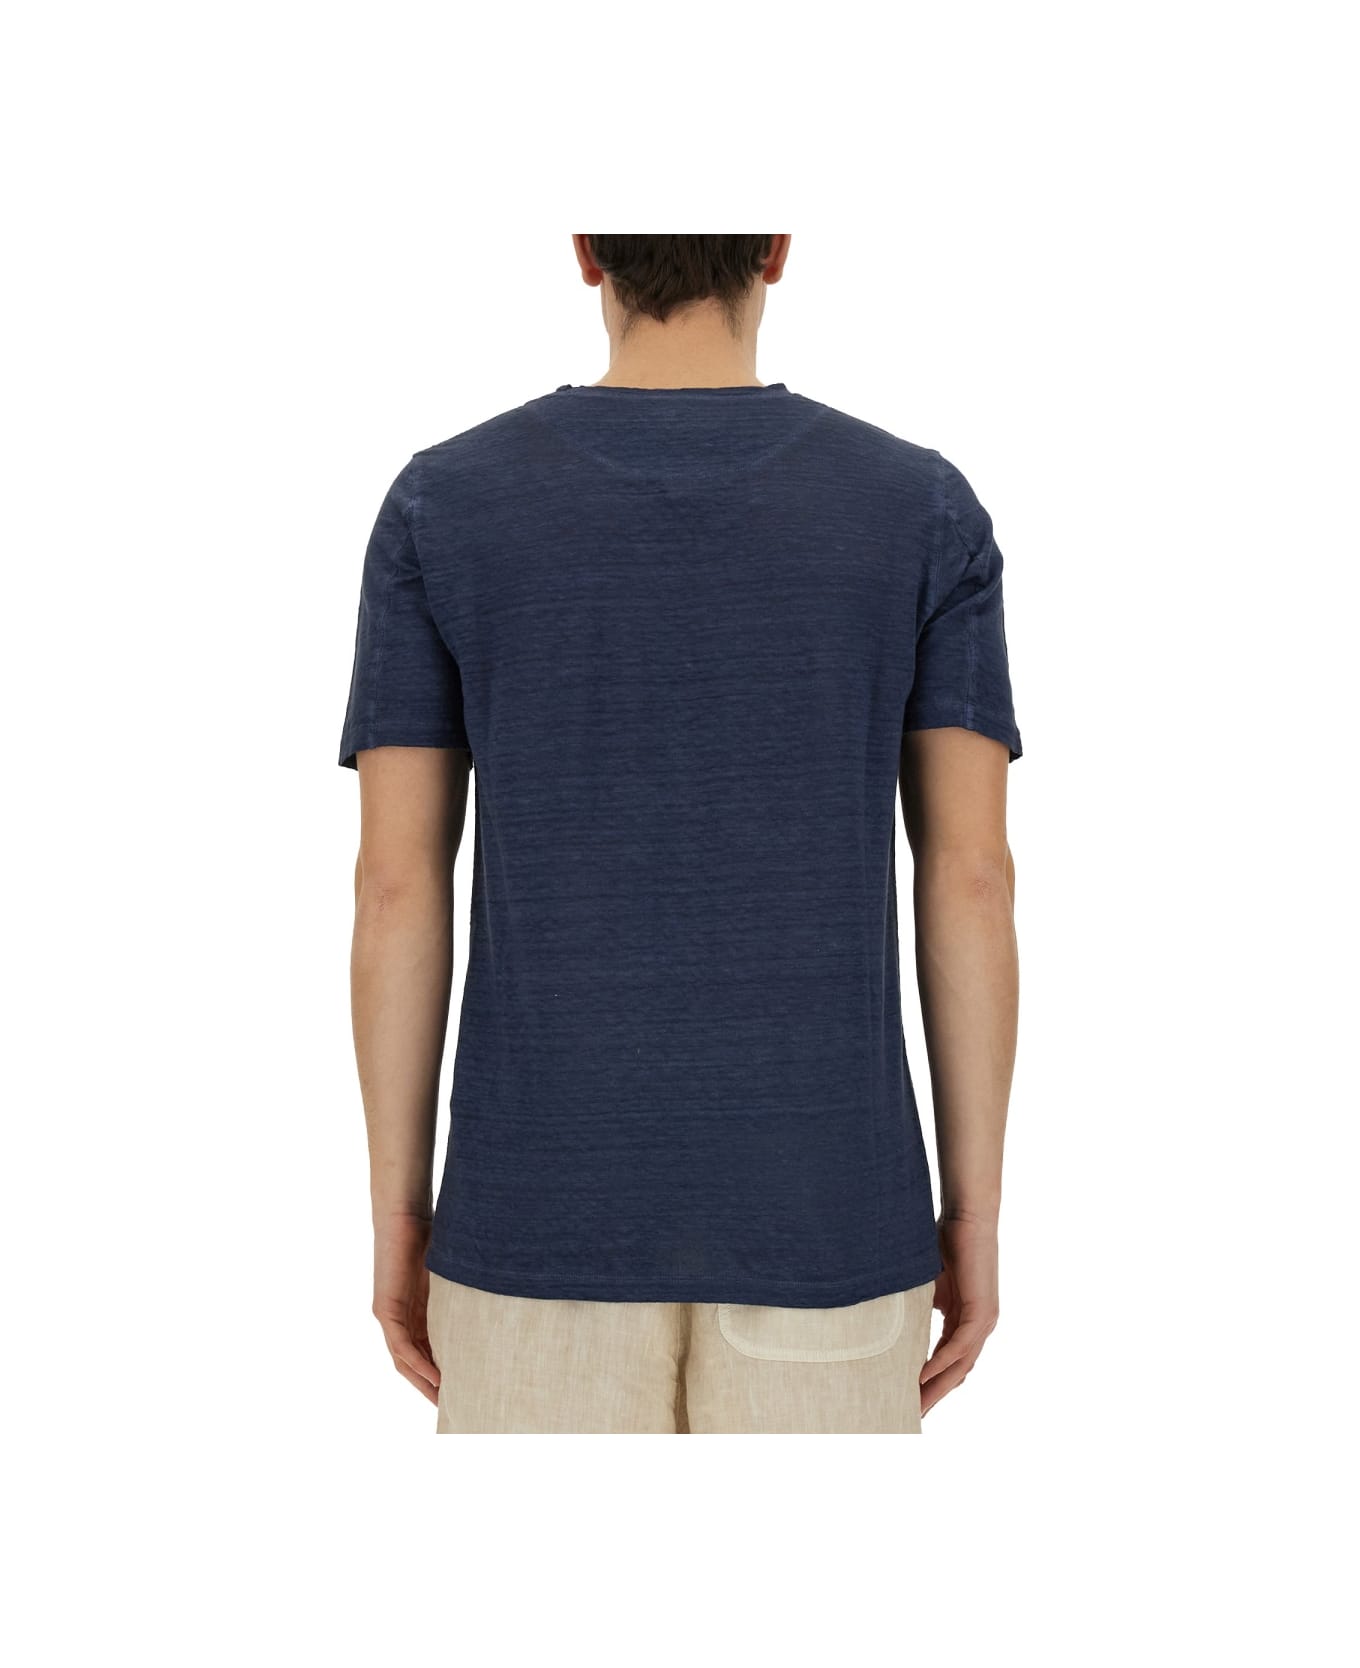 120% Lino Linen T-shirt - BLUE